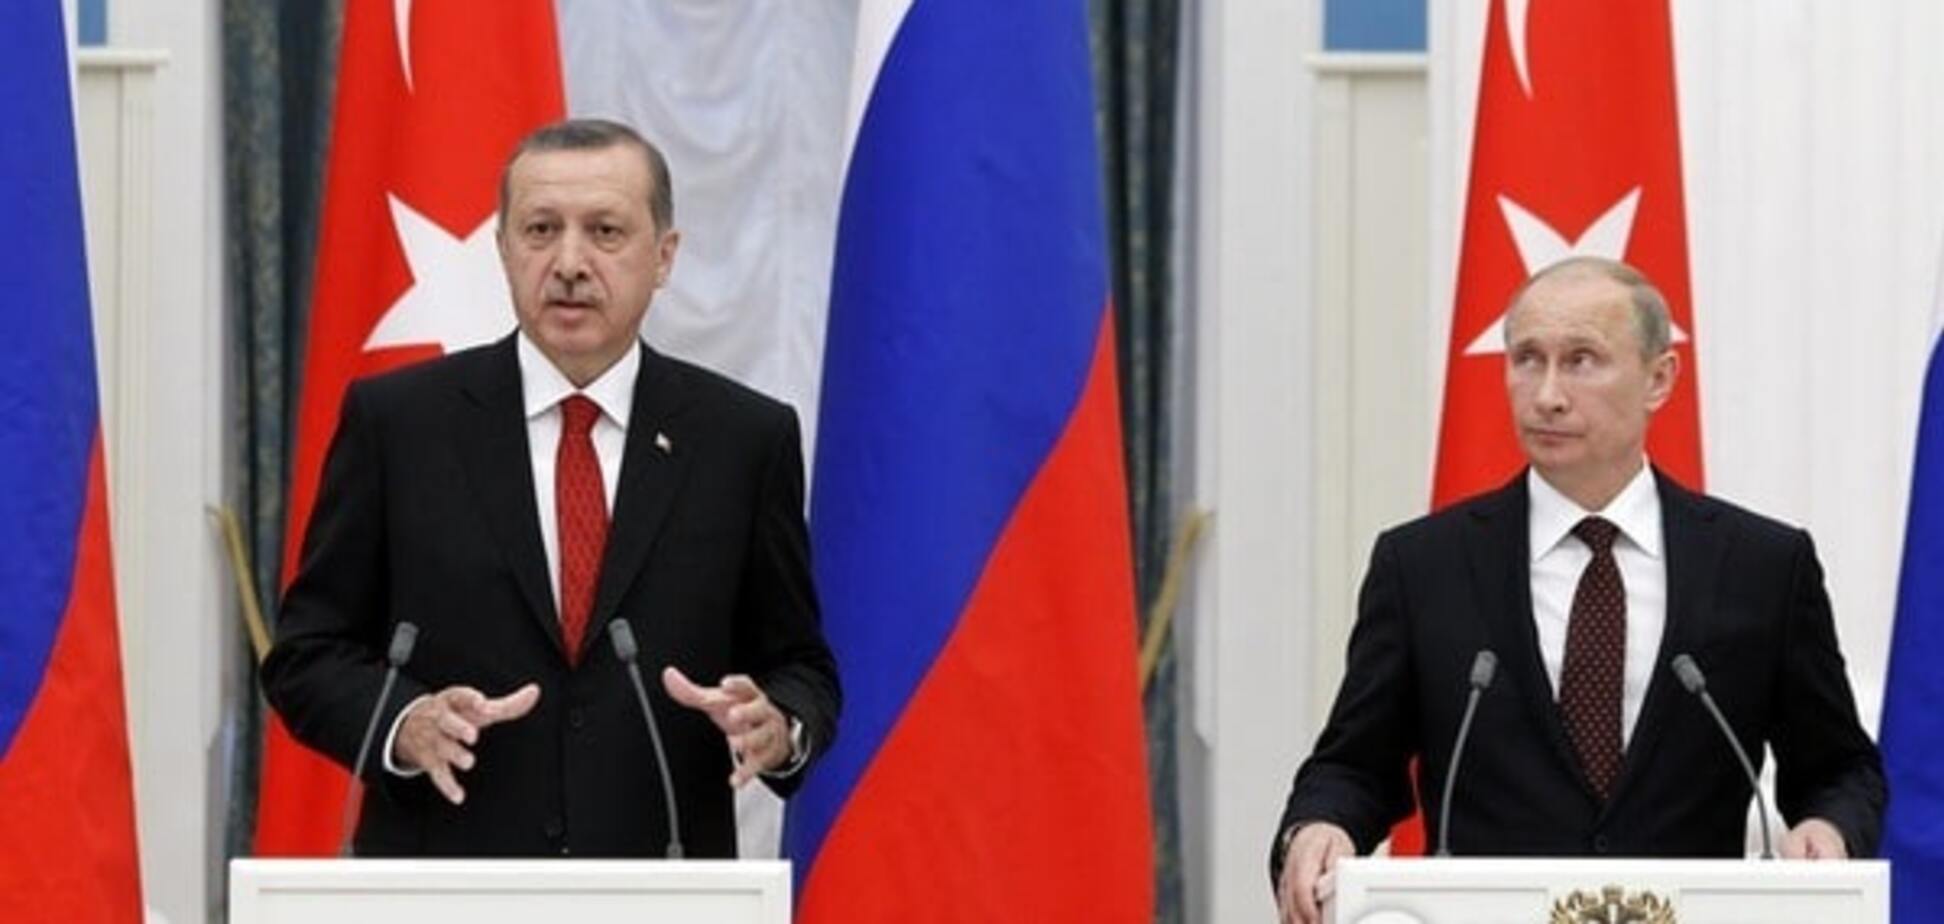 Колишній офіцер КДБ: на кожного 'хитрого Путіна' знайдеться свій Ердоган із різьбленням